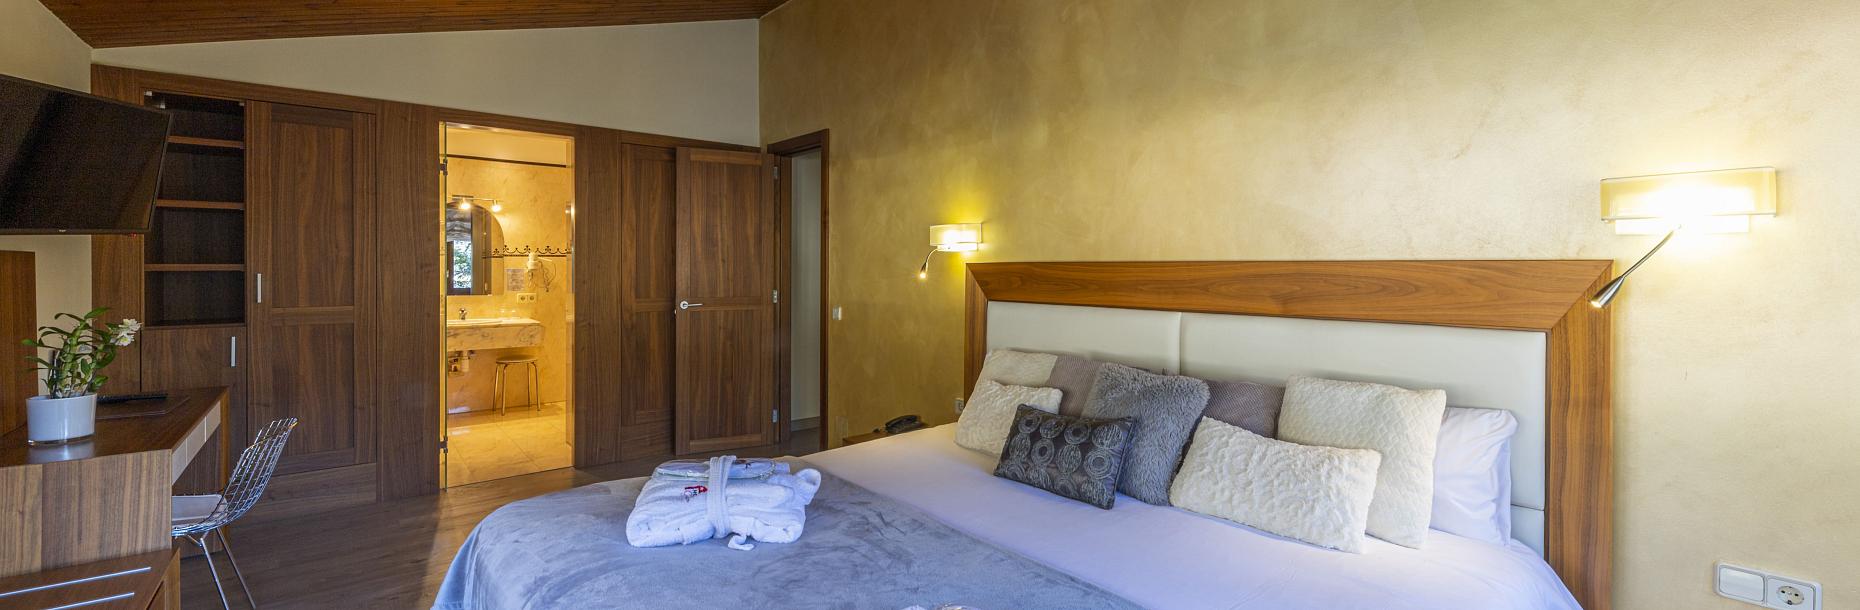 L'hotel amb més encant a Andorra